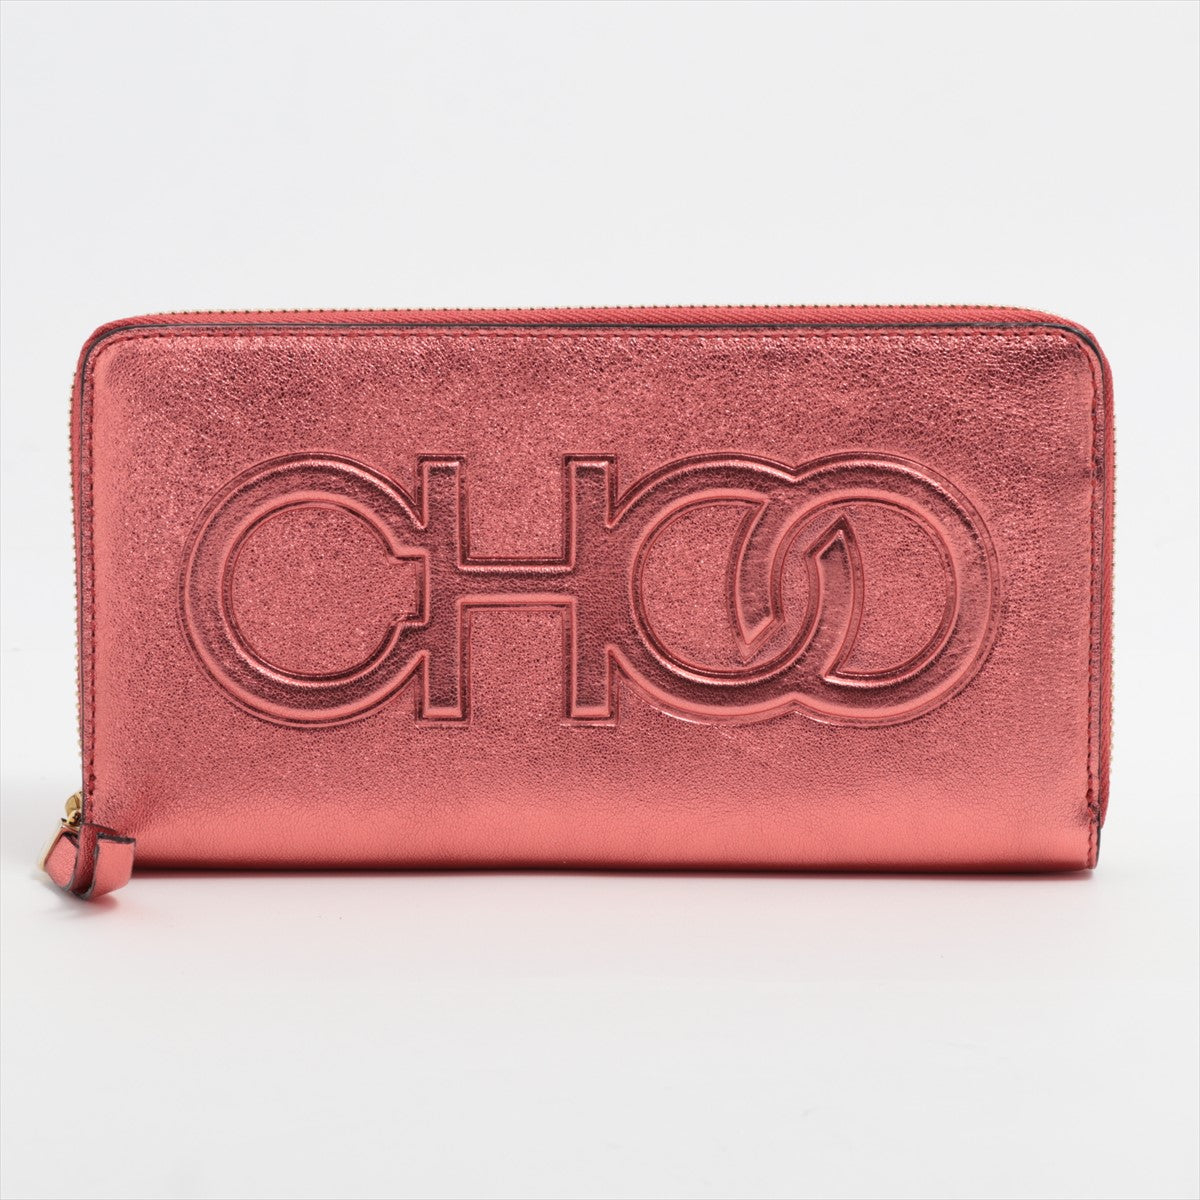 Women's Designer Small Leather Goods | JIMMY CHOO UK